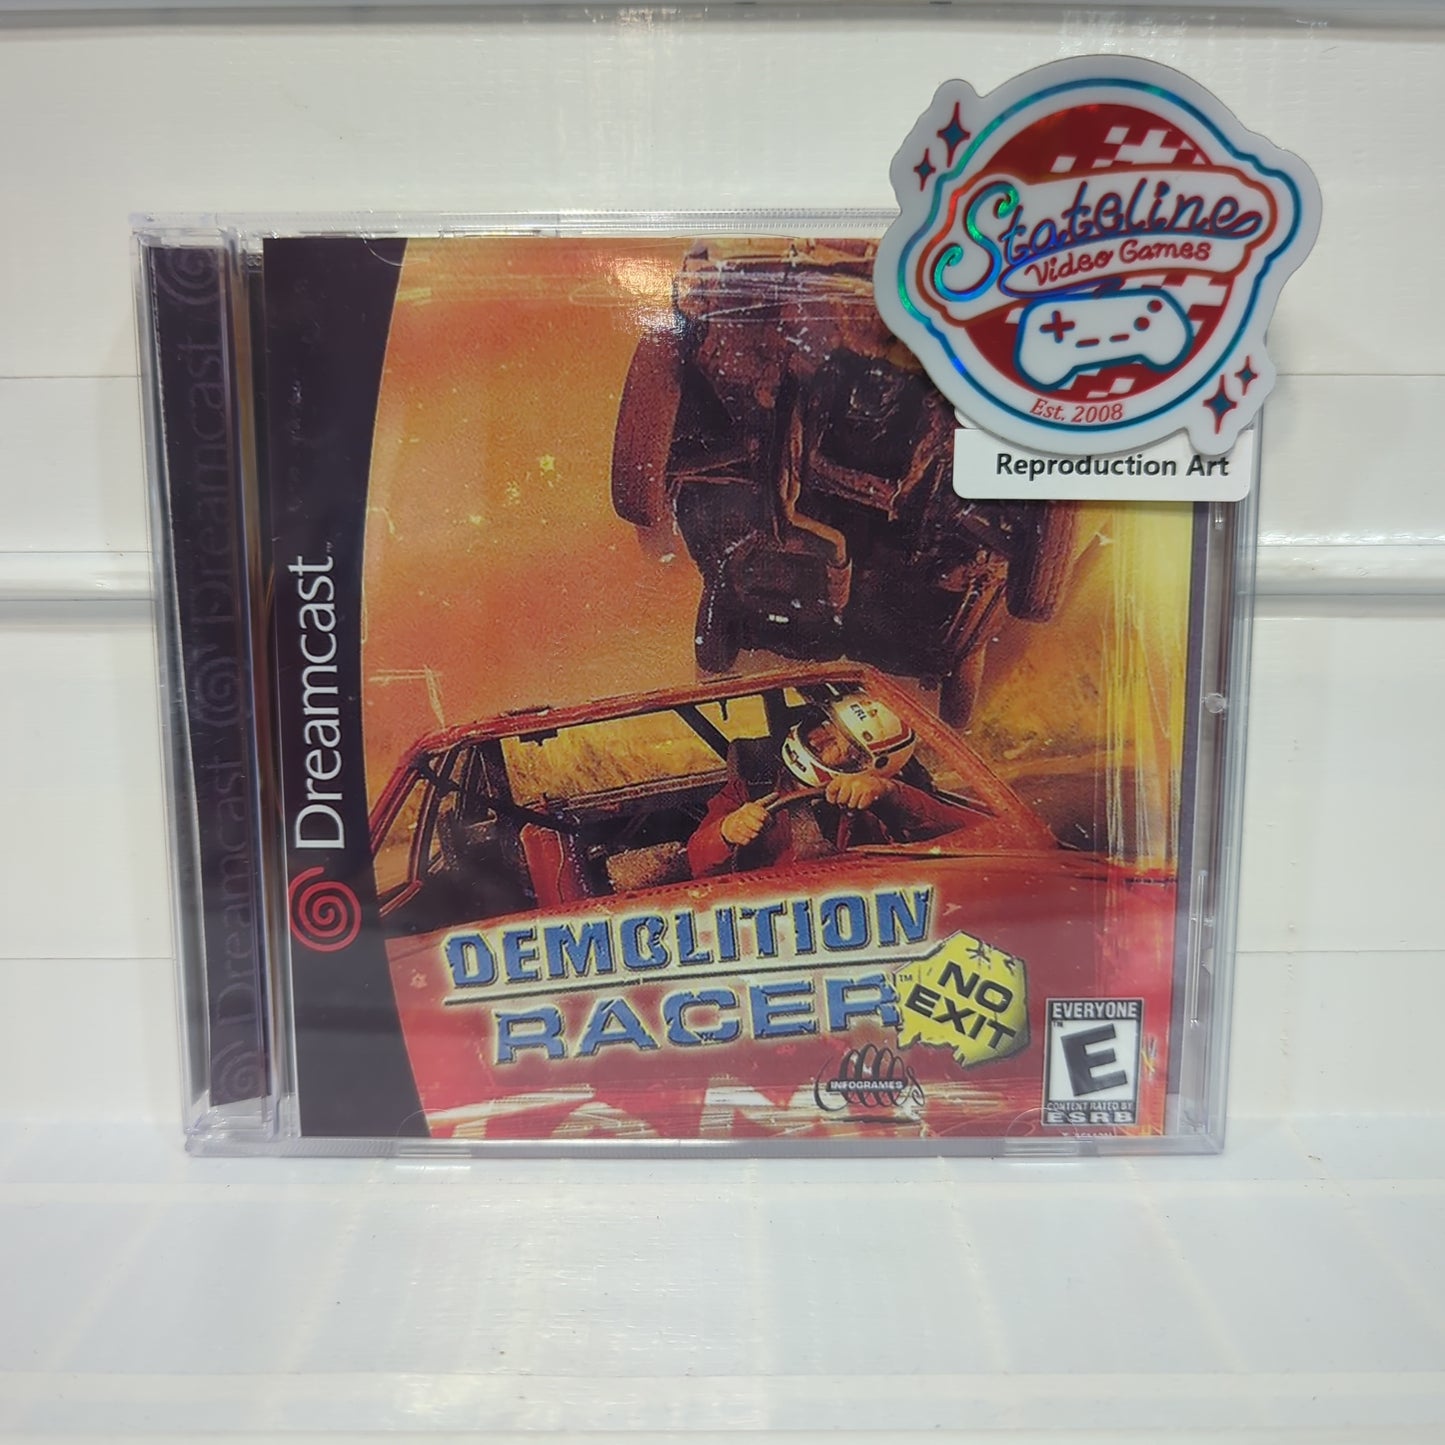 Demolition Racer - Sega Dreamcast